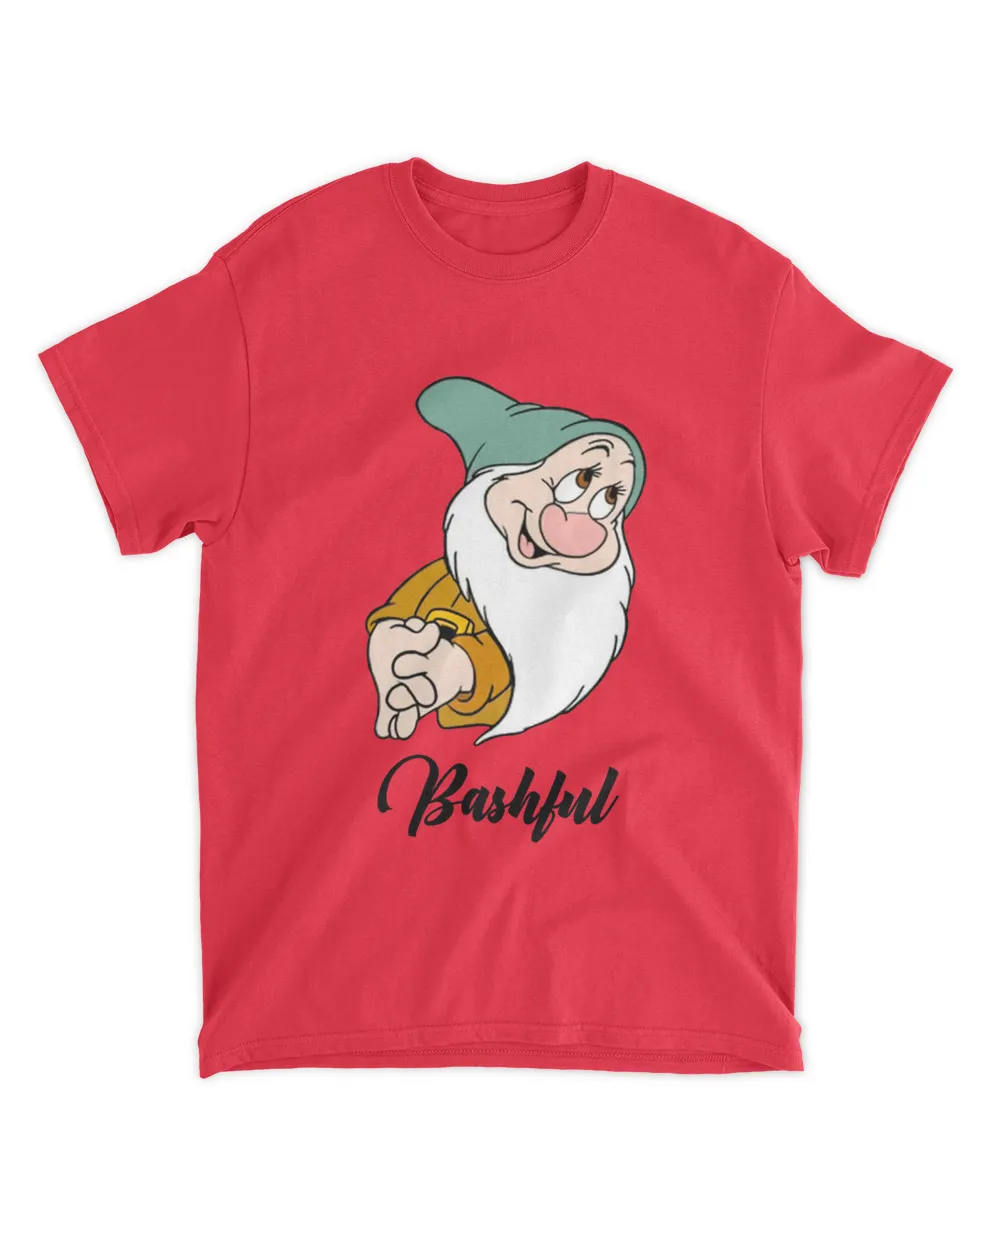 Bashful In Seven Dwarfs shirt